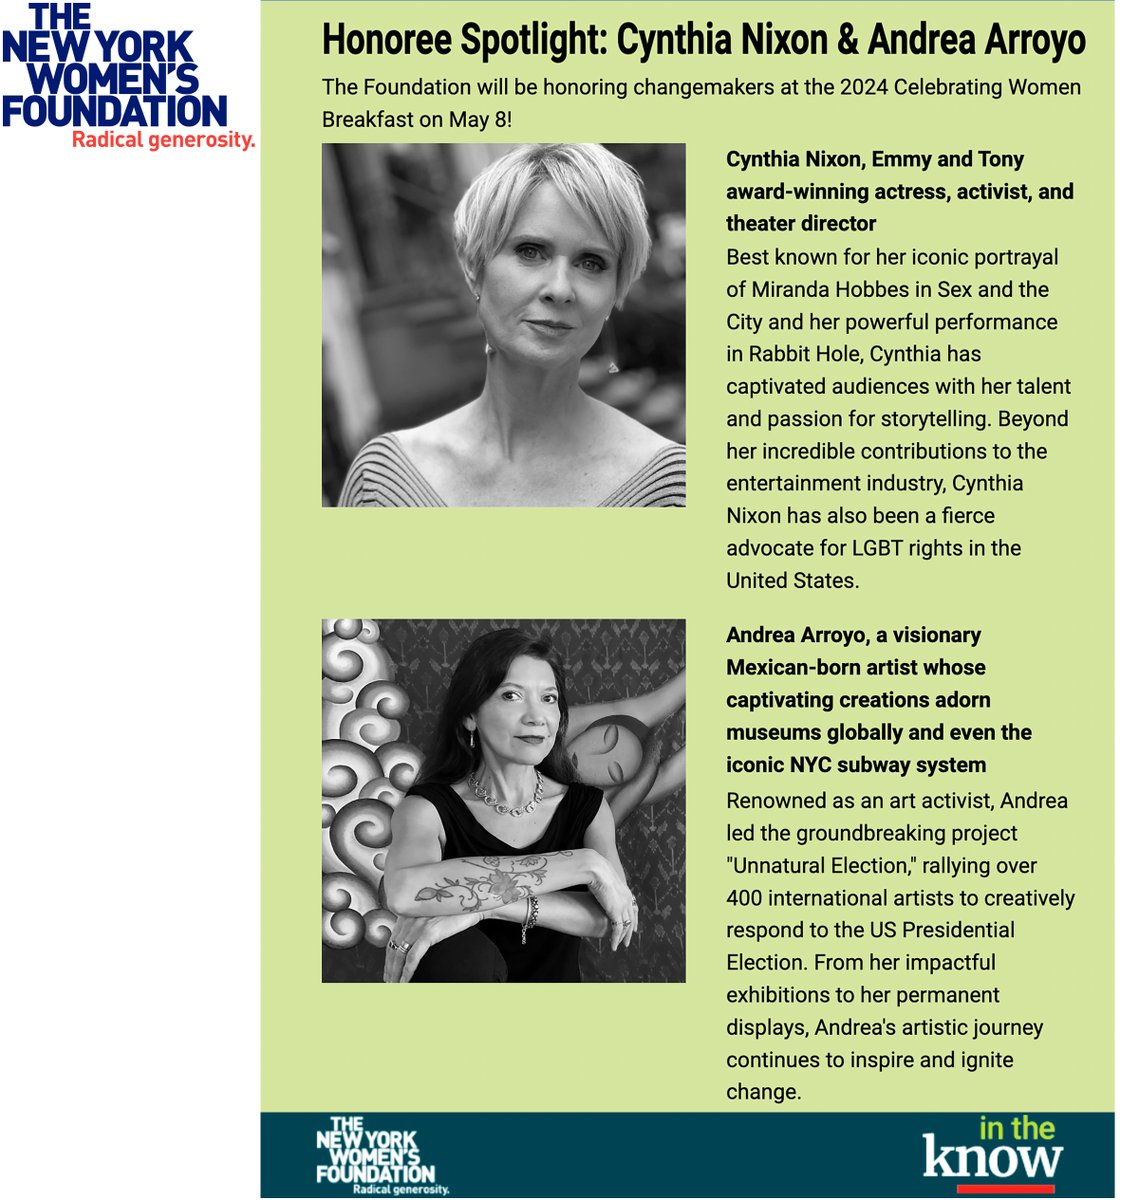 #Honoree Spotlight: @CynthiaNixon & @AndreaArroyoArt  Honored to be recognized by @NYWomensFdn @ the #CelebrateWomen Breakfast, May 8, INFO: give.nywf.org/.../2024-celeb… #radicalgenerosity @nywomensfd
@fondationchanel @nyliberty
#AndreaArroyoArt #ArtAsSolidarity @ArtsCRNY #ArtMatters